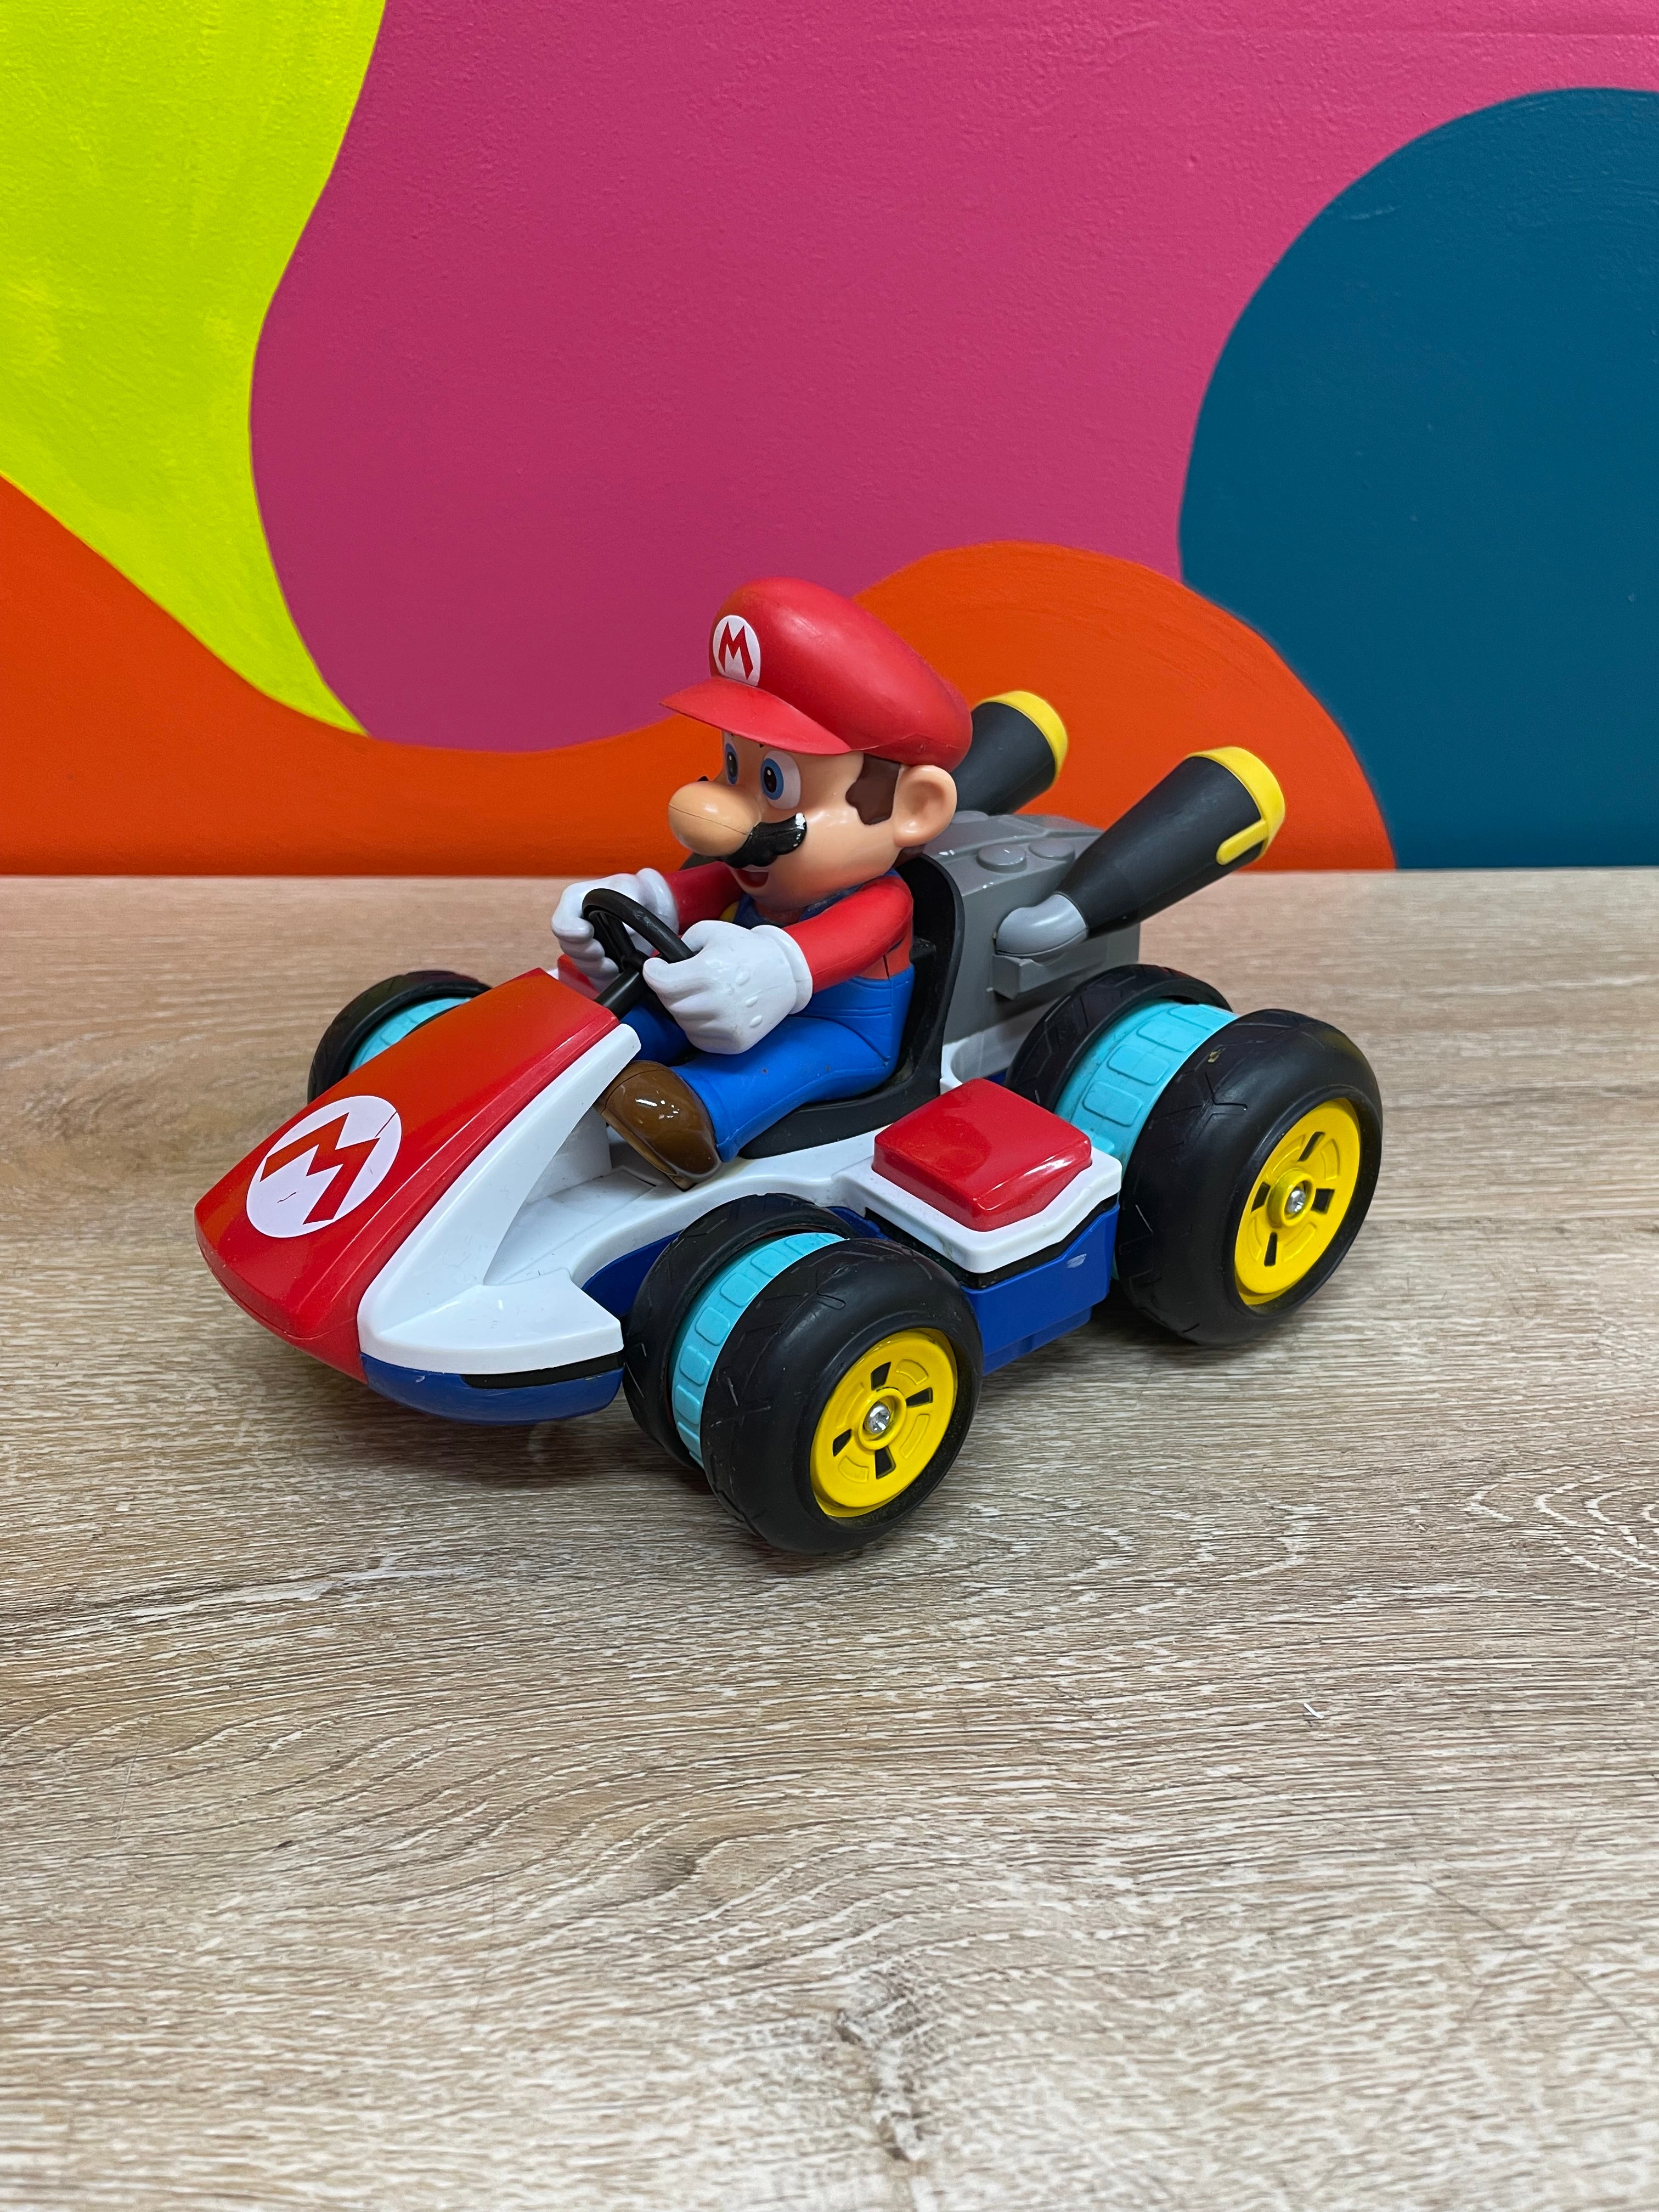 Mario Kart Toy